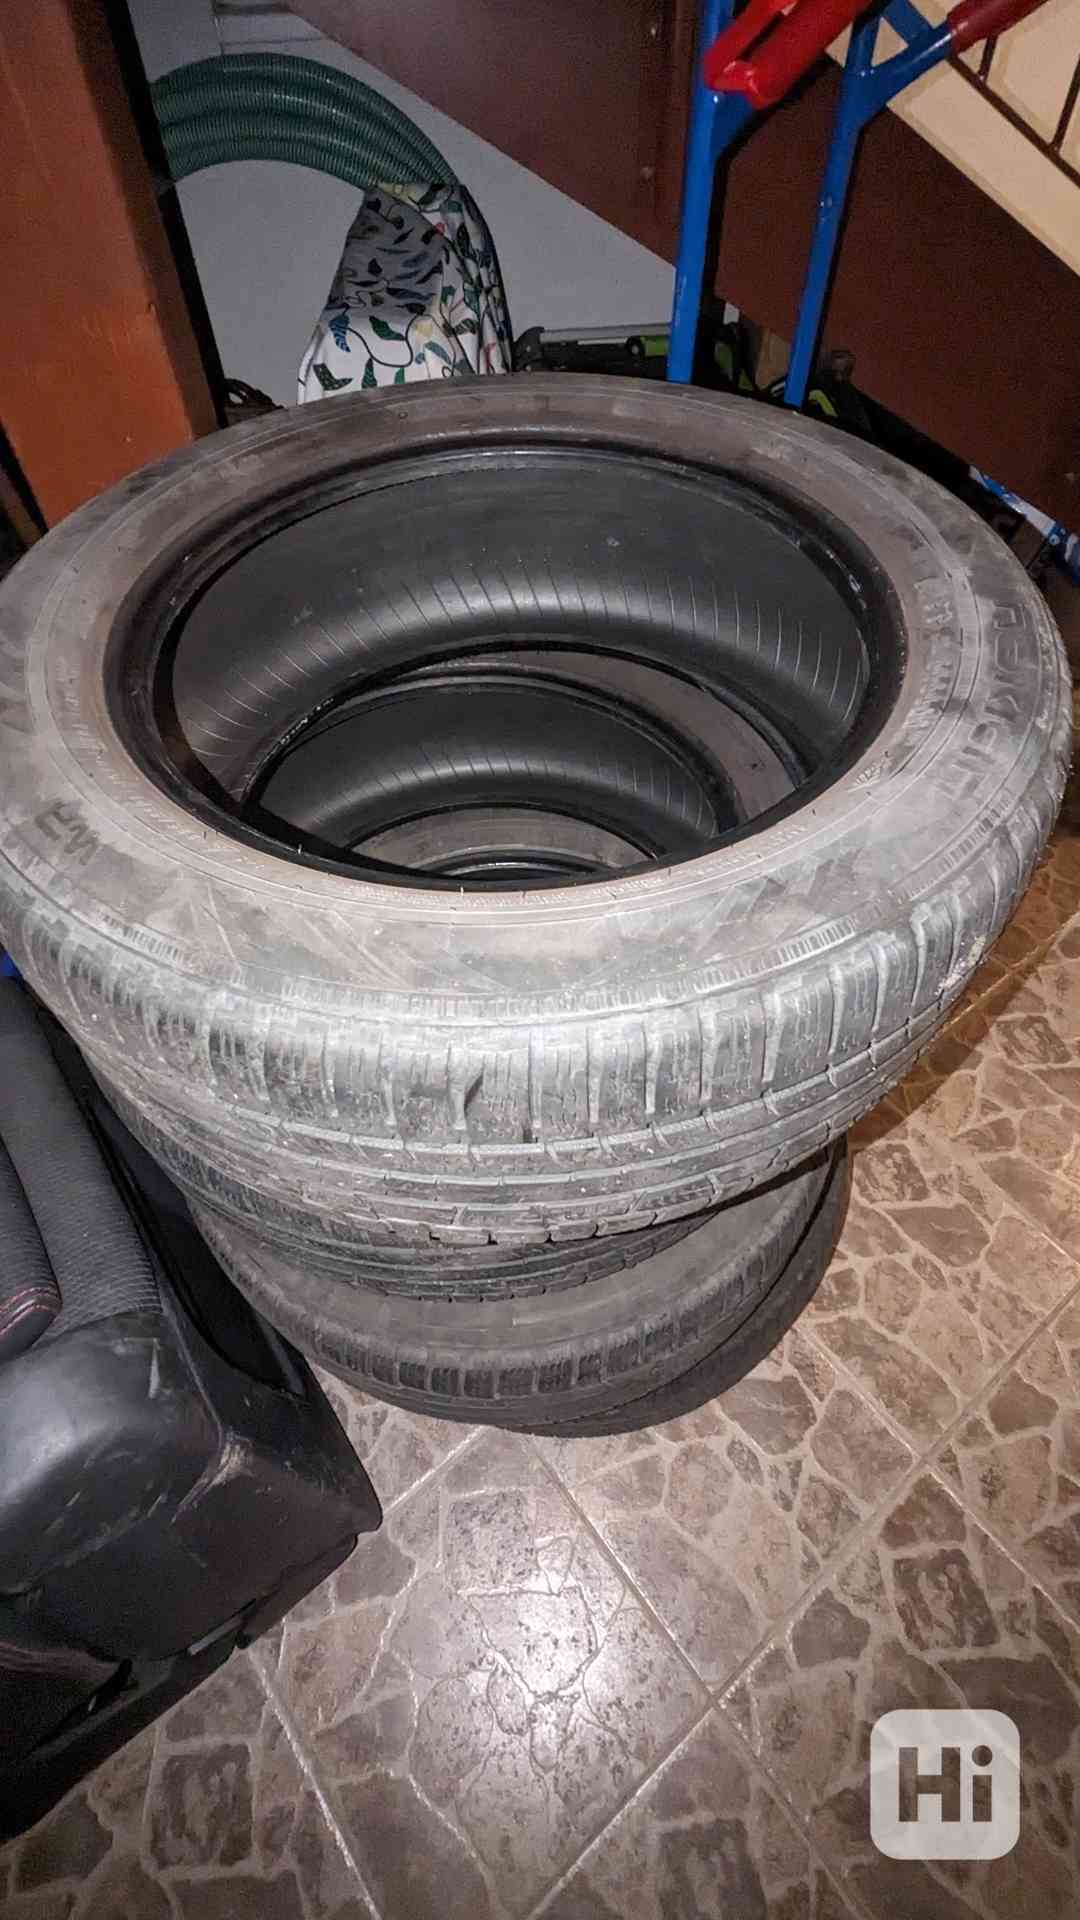 Daruji 4 ks zimní pneu Nokian R17, 225/55 101V - foto 1